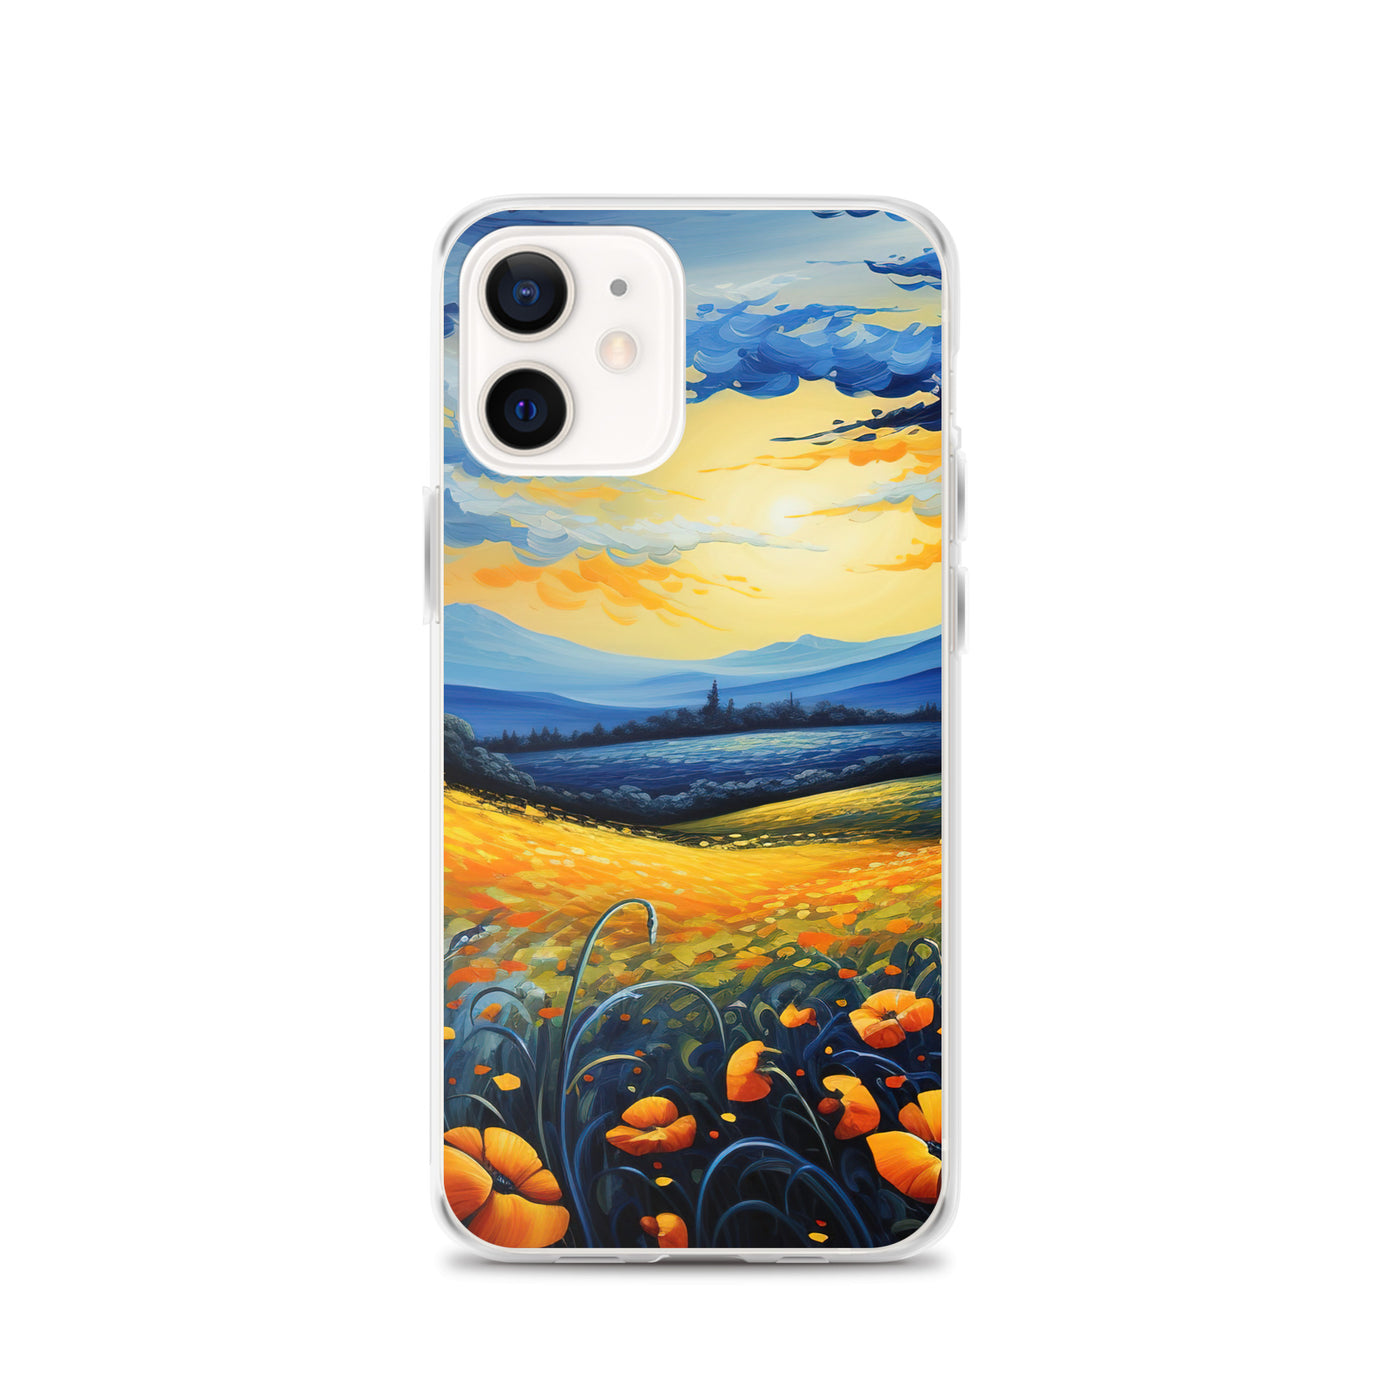 Berglandschaft mit schönen gelben Blumen - Landschaftsmalerei - iPhone Schutzhülle (durchsichtig) berge xxx iPhone 12